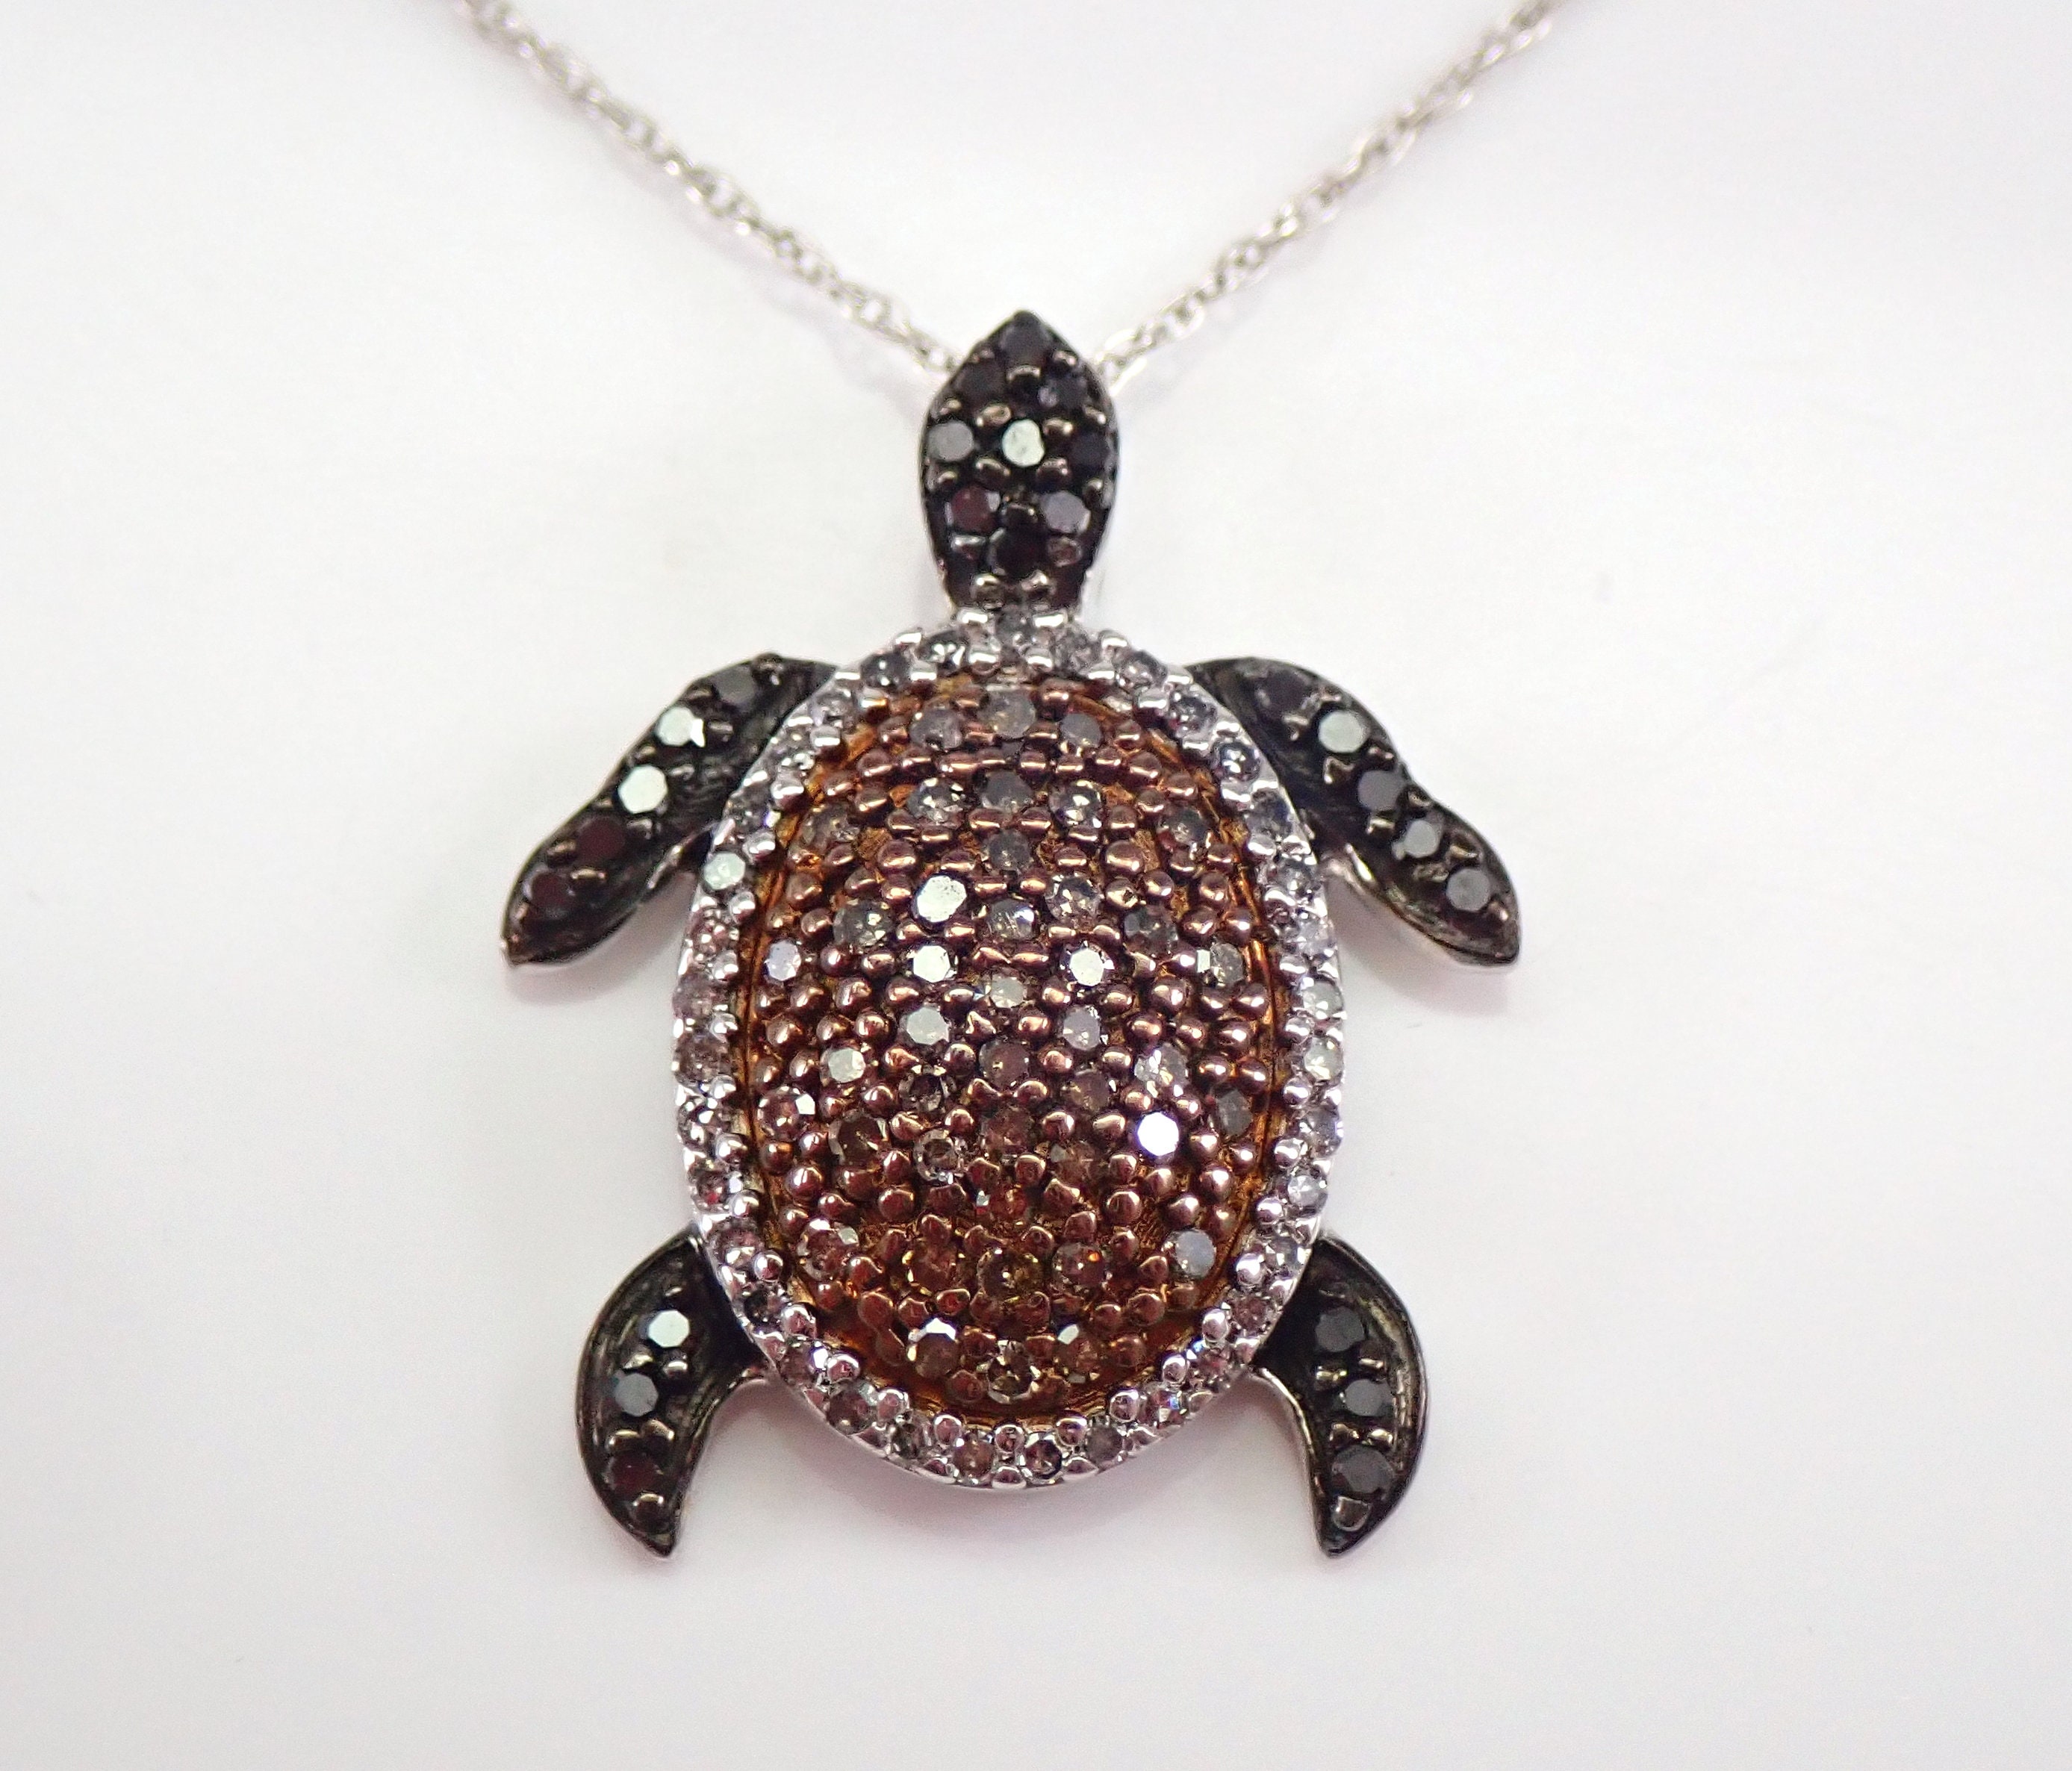 Sea Turtle – Diamond Art Club